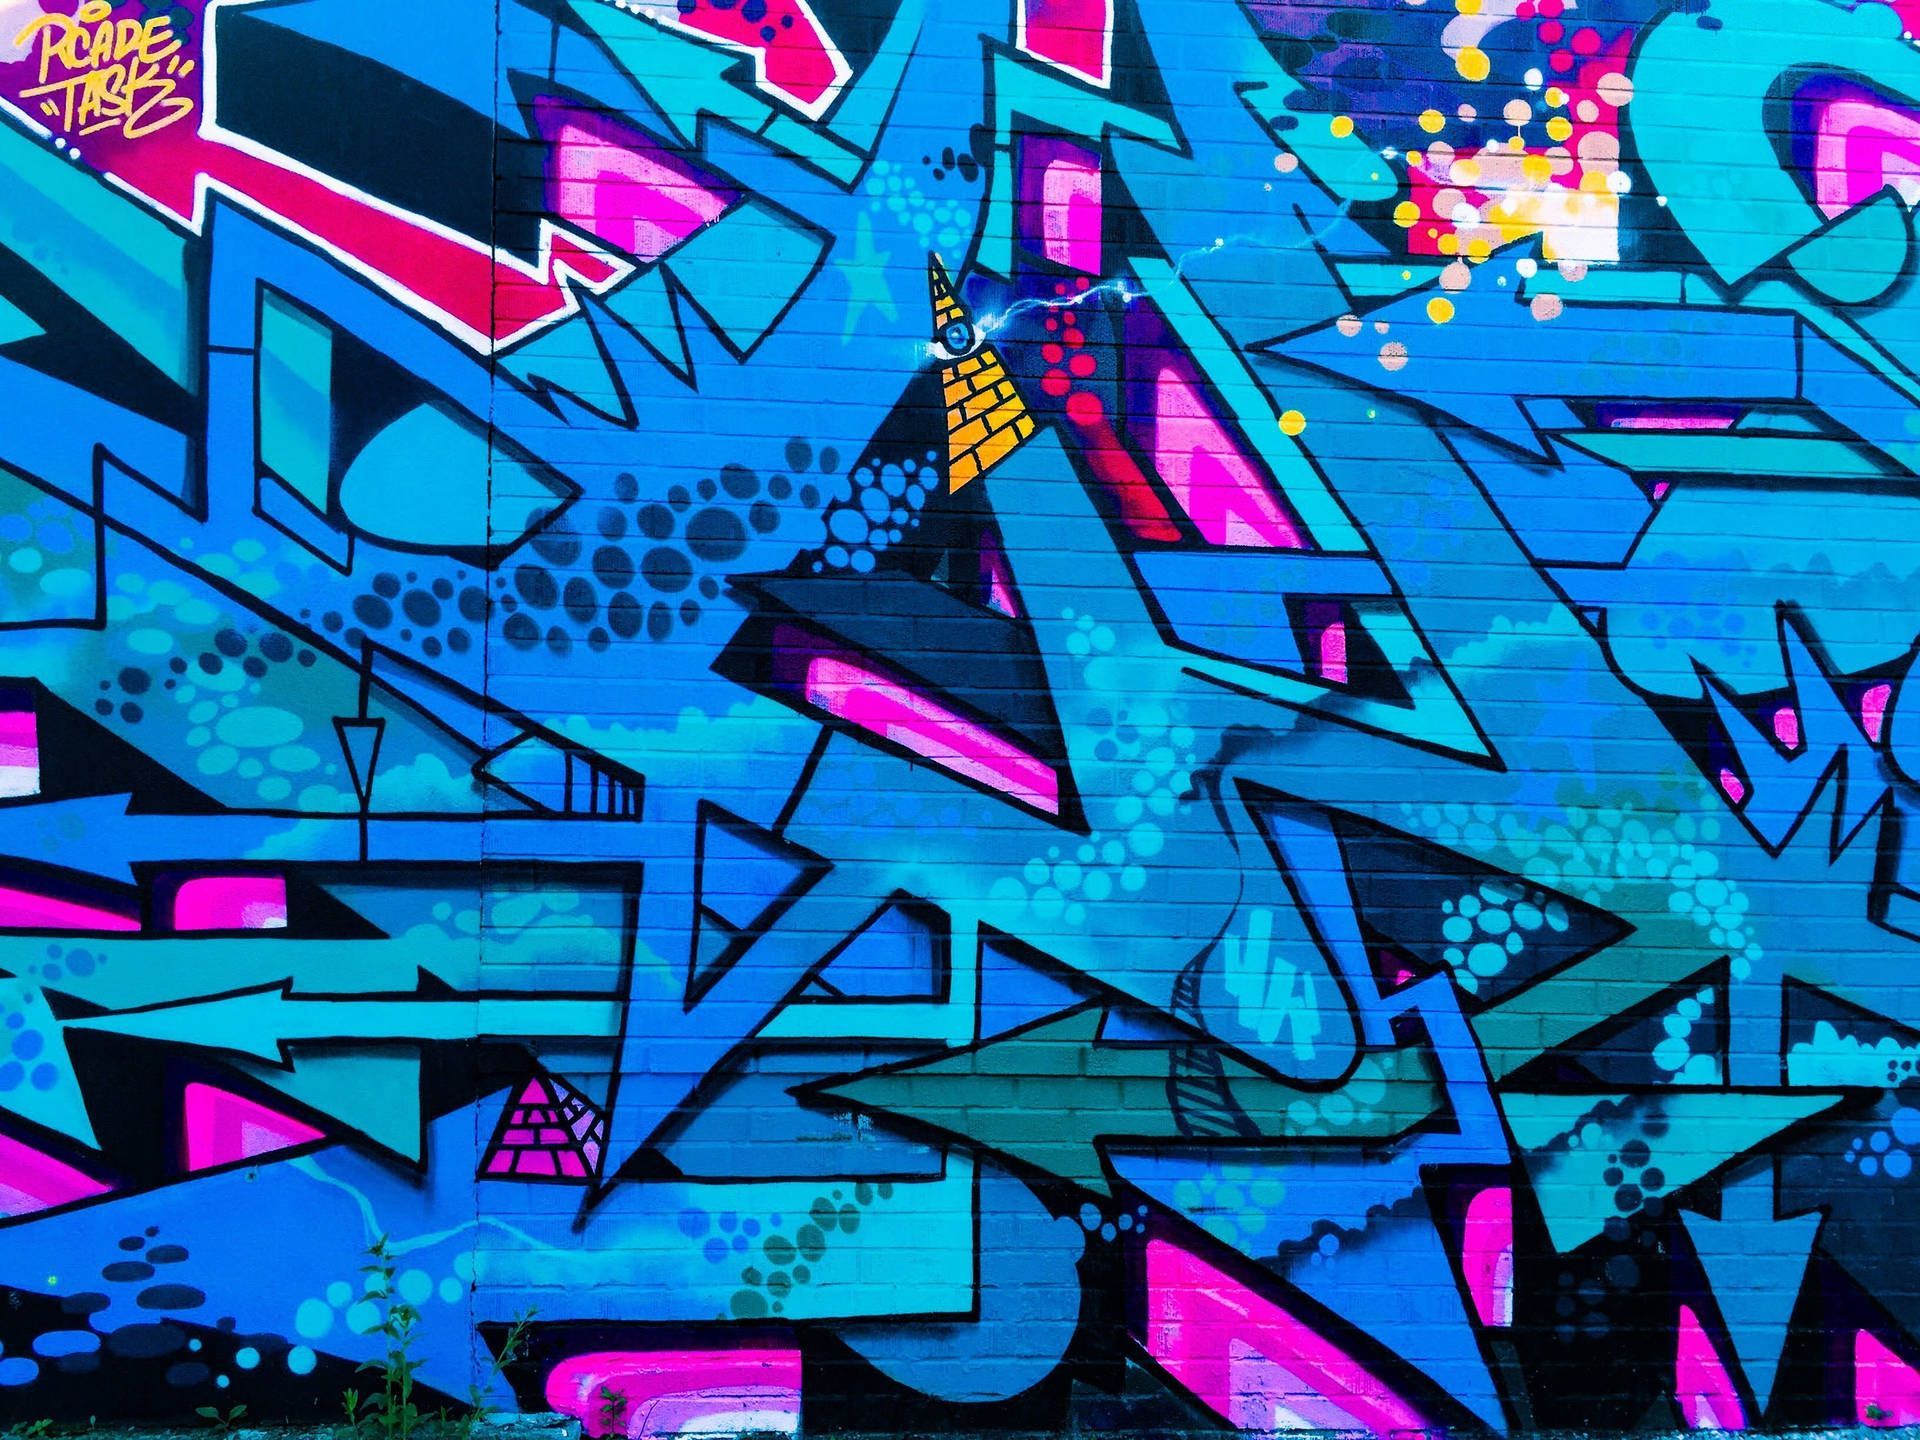 A blue brick wall covered in graffiti. - Graffiti